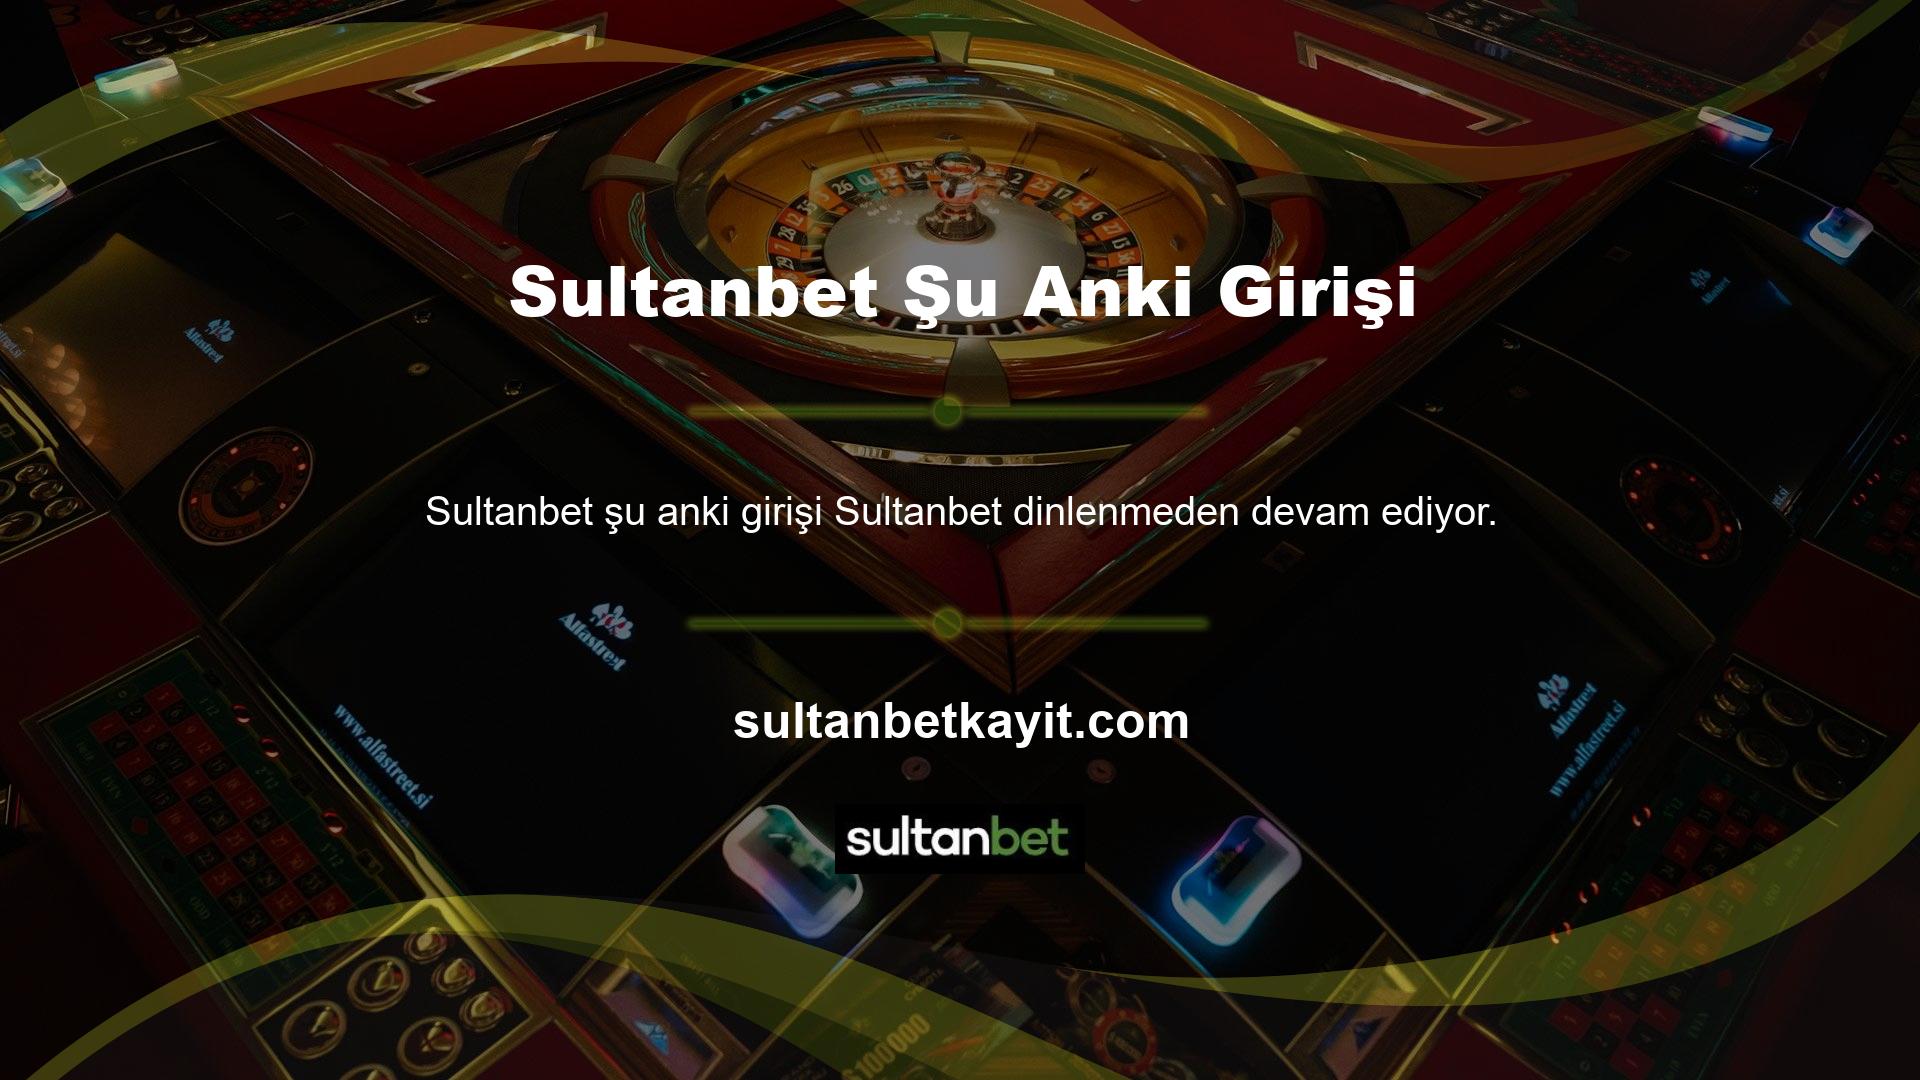 İnternet bağlantısı olan herhangi bir kanaldan Sultanbet bahis sitesine erişin ve hayallerinize bir adım daha yaklaşmak için canlı casino ve canlı spor bahislerine devam edin